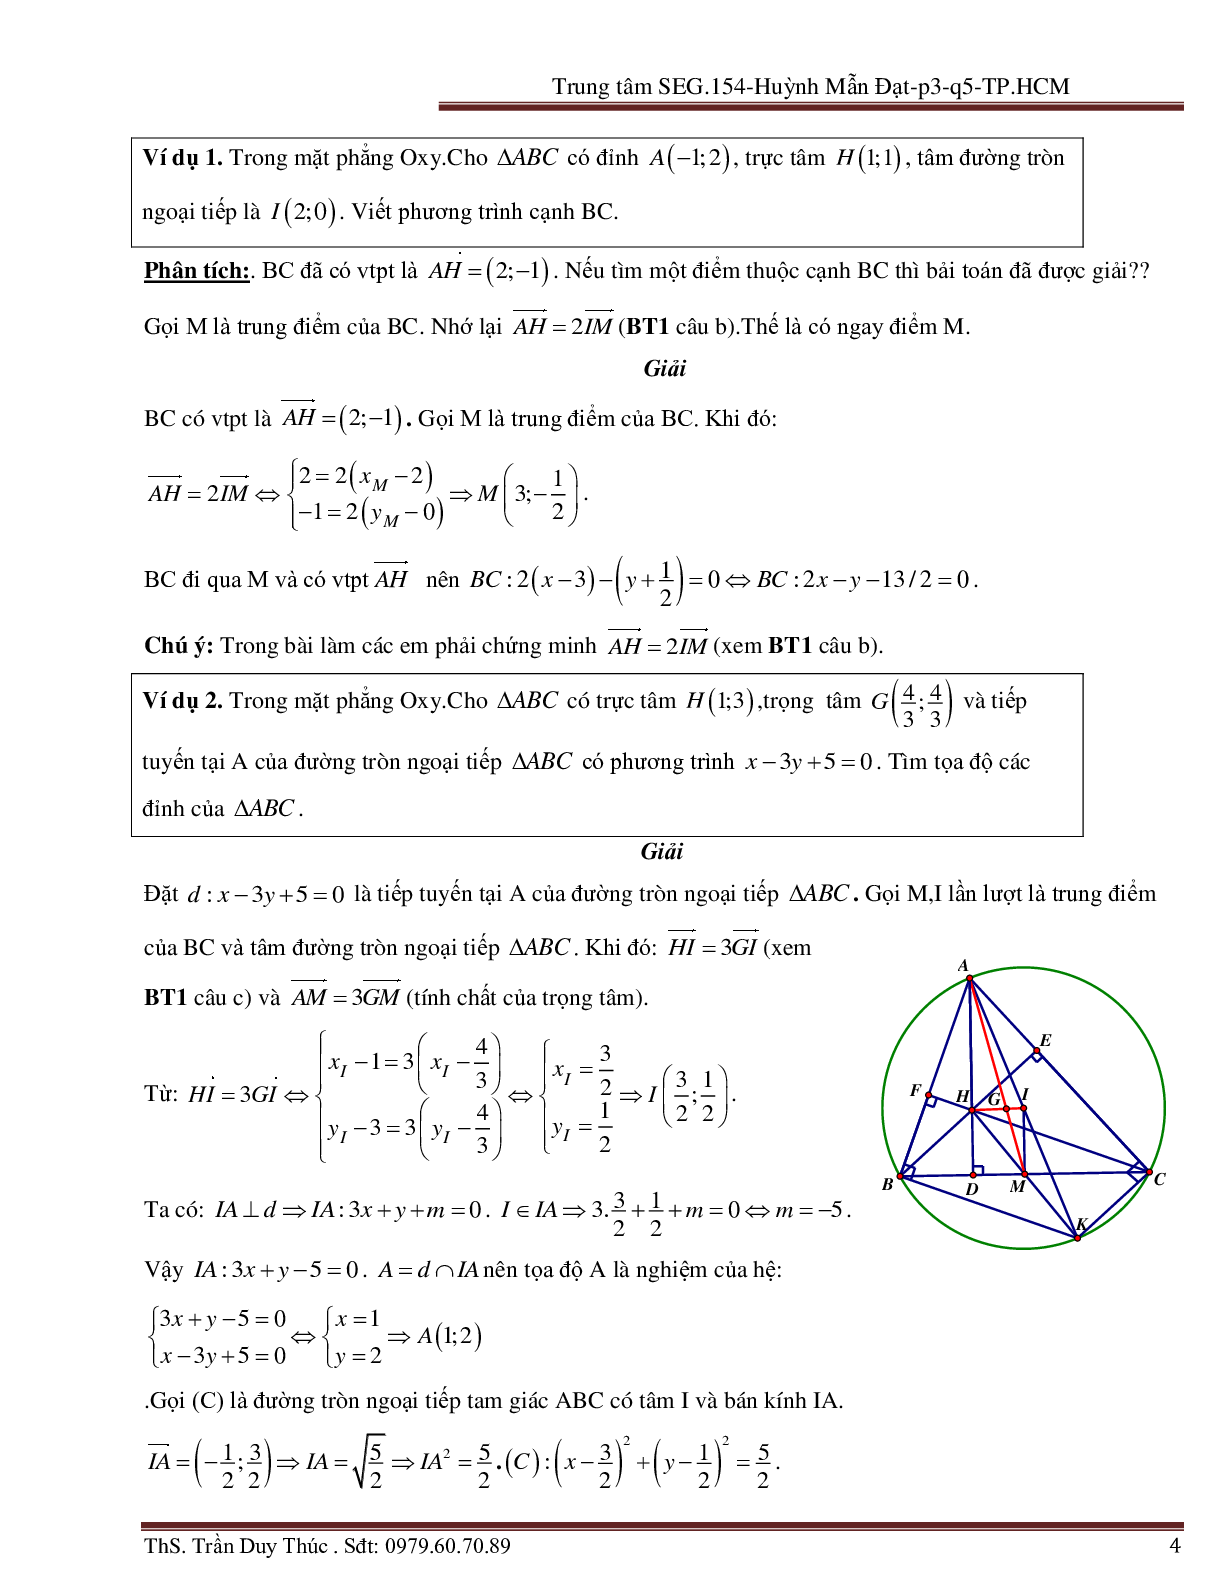 Vận dụng tính chất hình phẳng để giải bài toán Oxy liên quan đến đường tròn (trang 4)